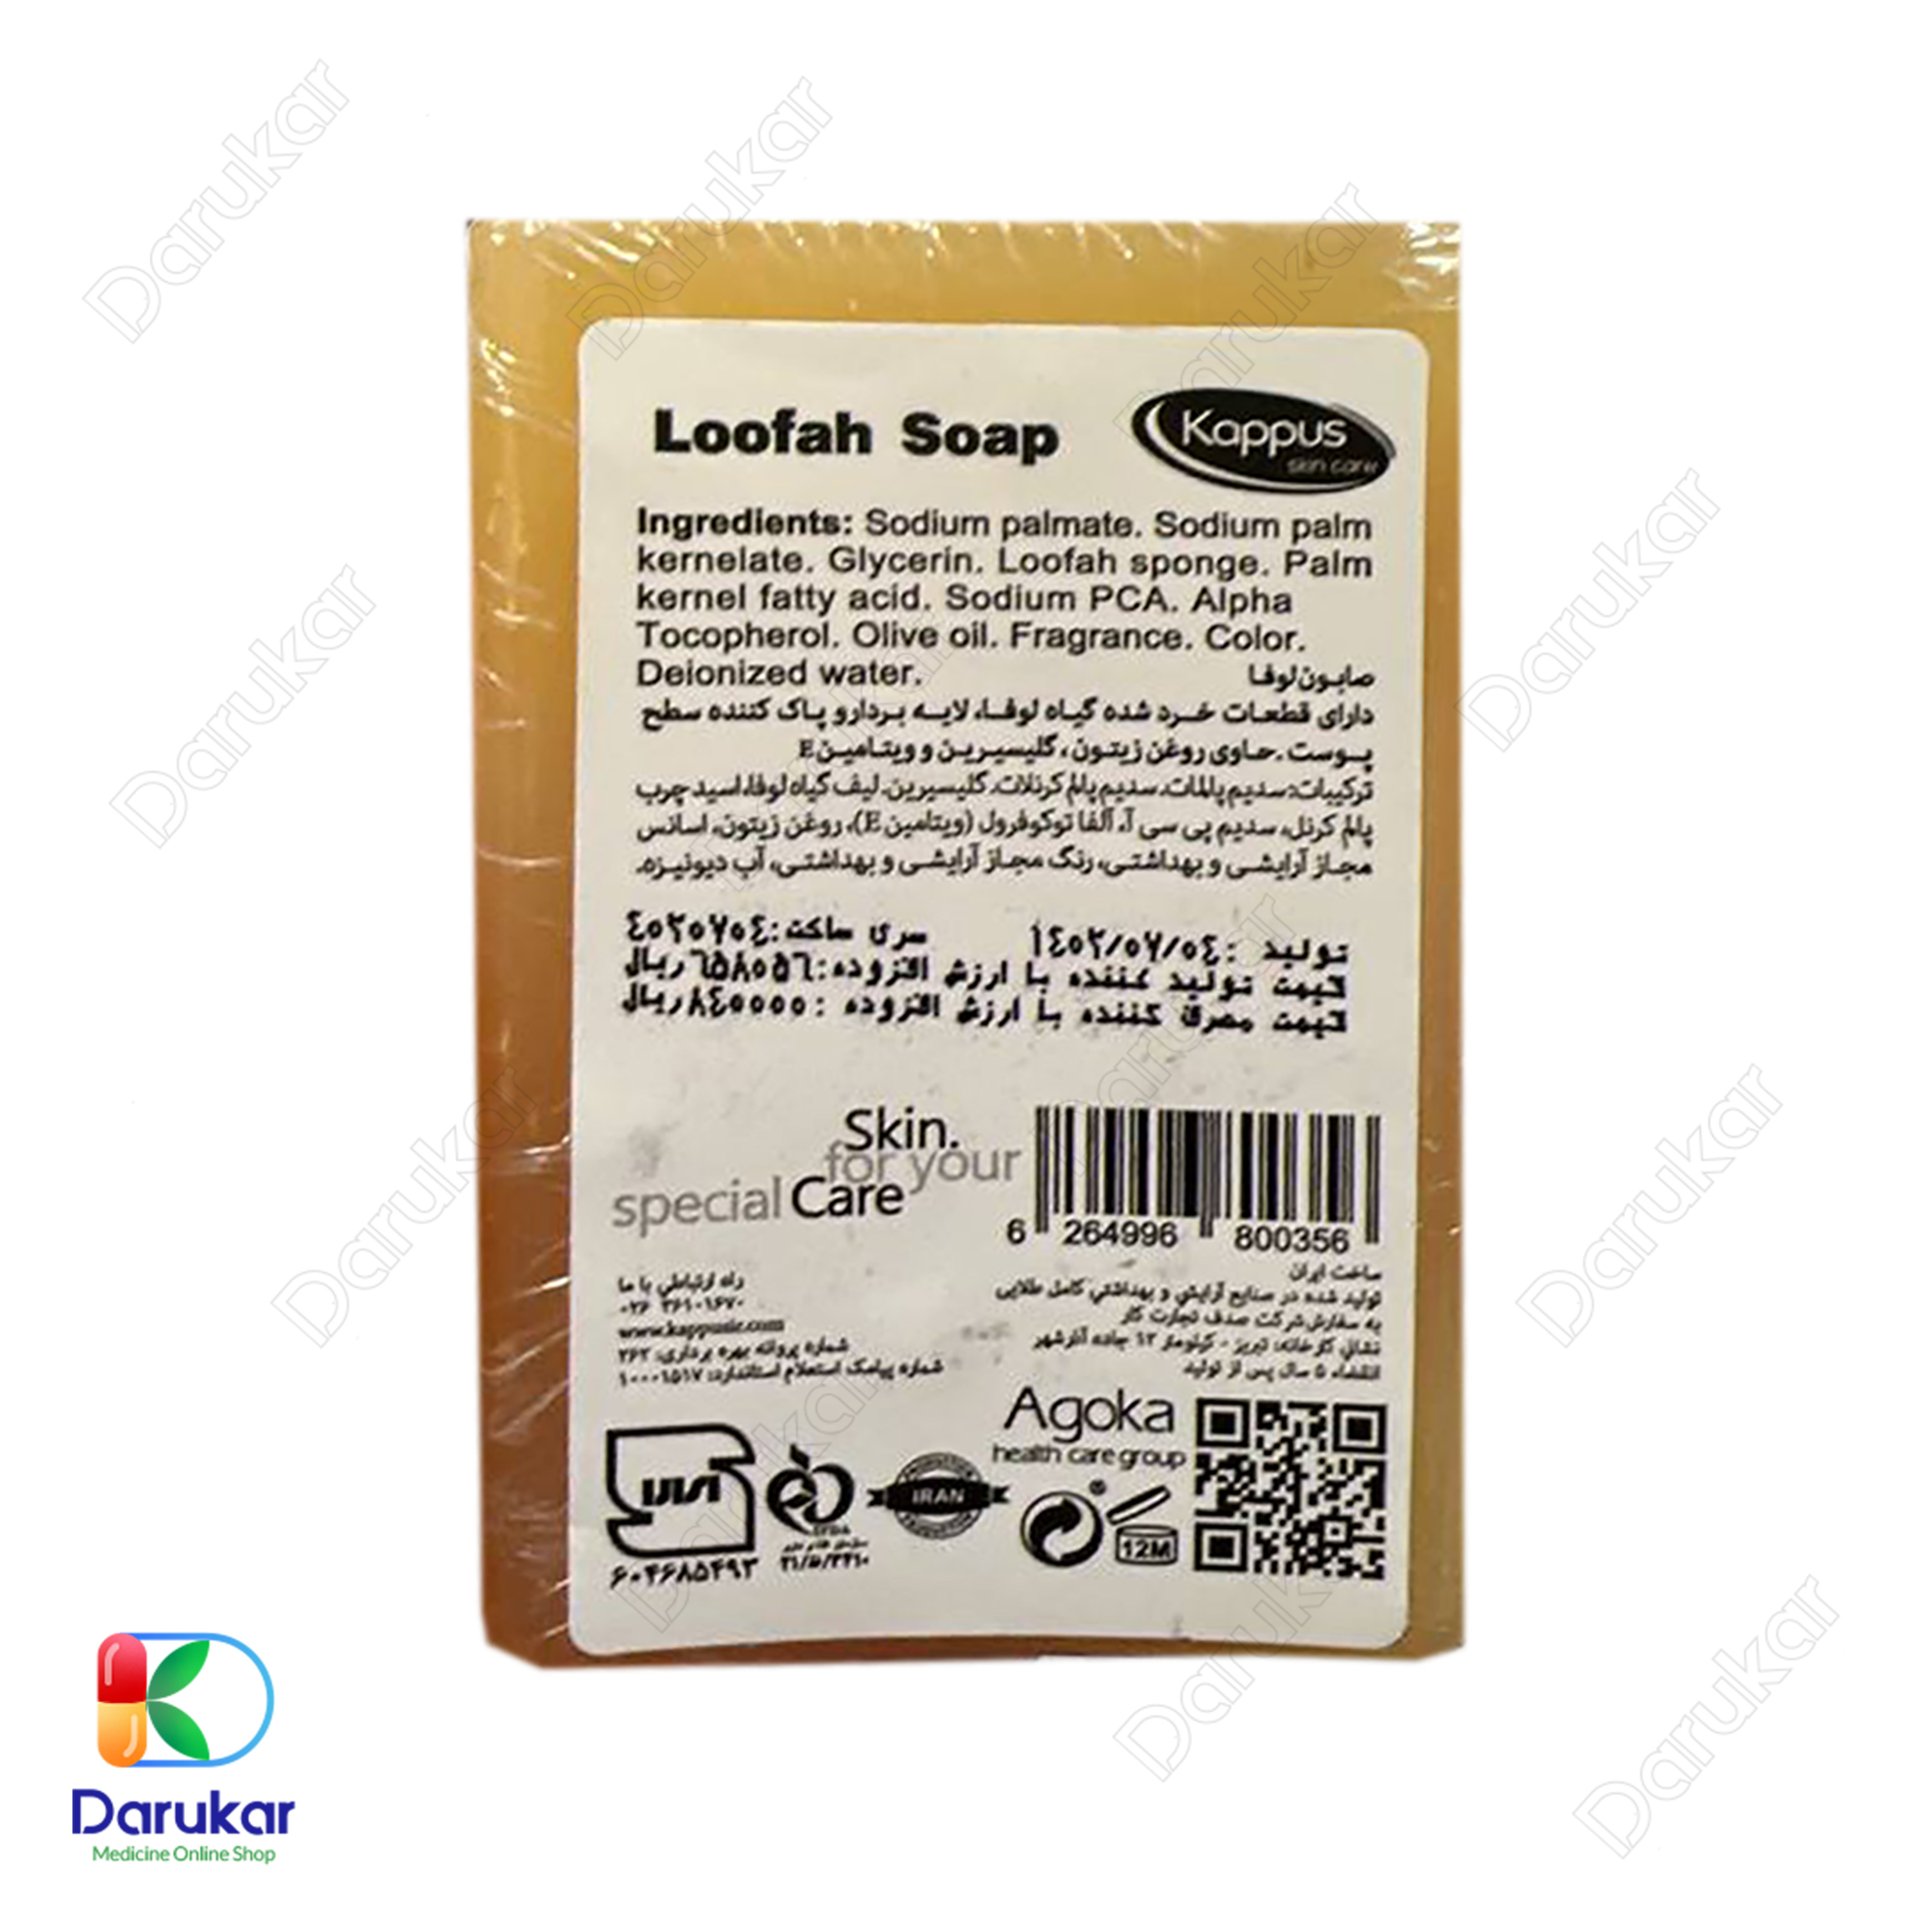 kappus loofah soap 2